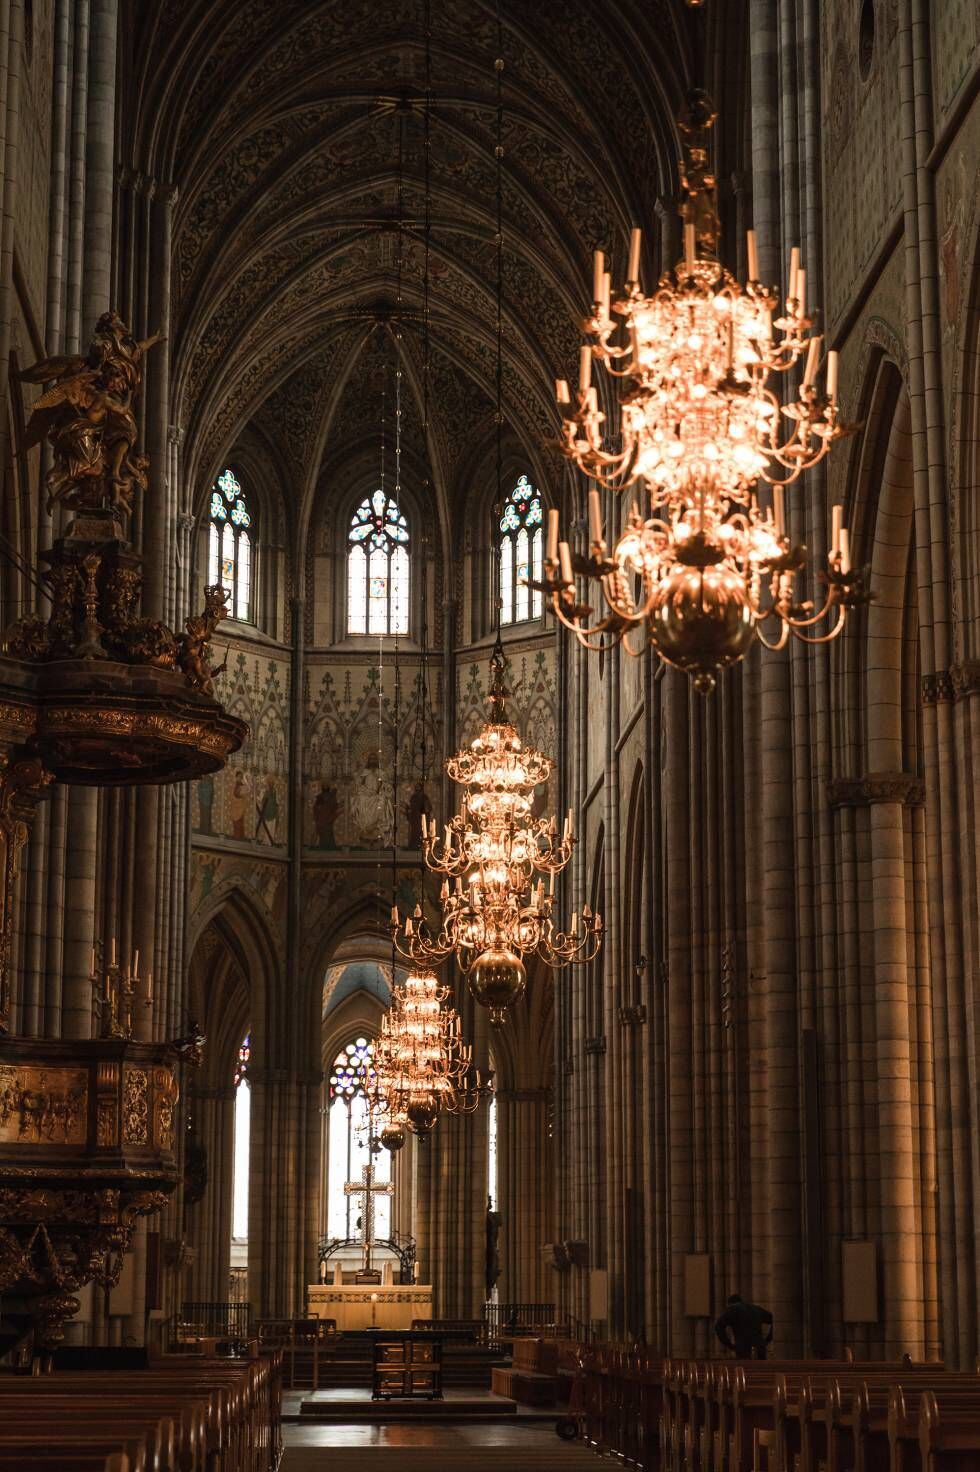 De estilo gótico, a catedral de Upsala, construída por volta de 1270, é a maior do norte da Europa. Nela está enterrado o rei Gustav I.